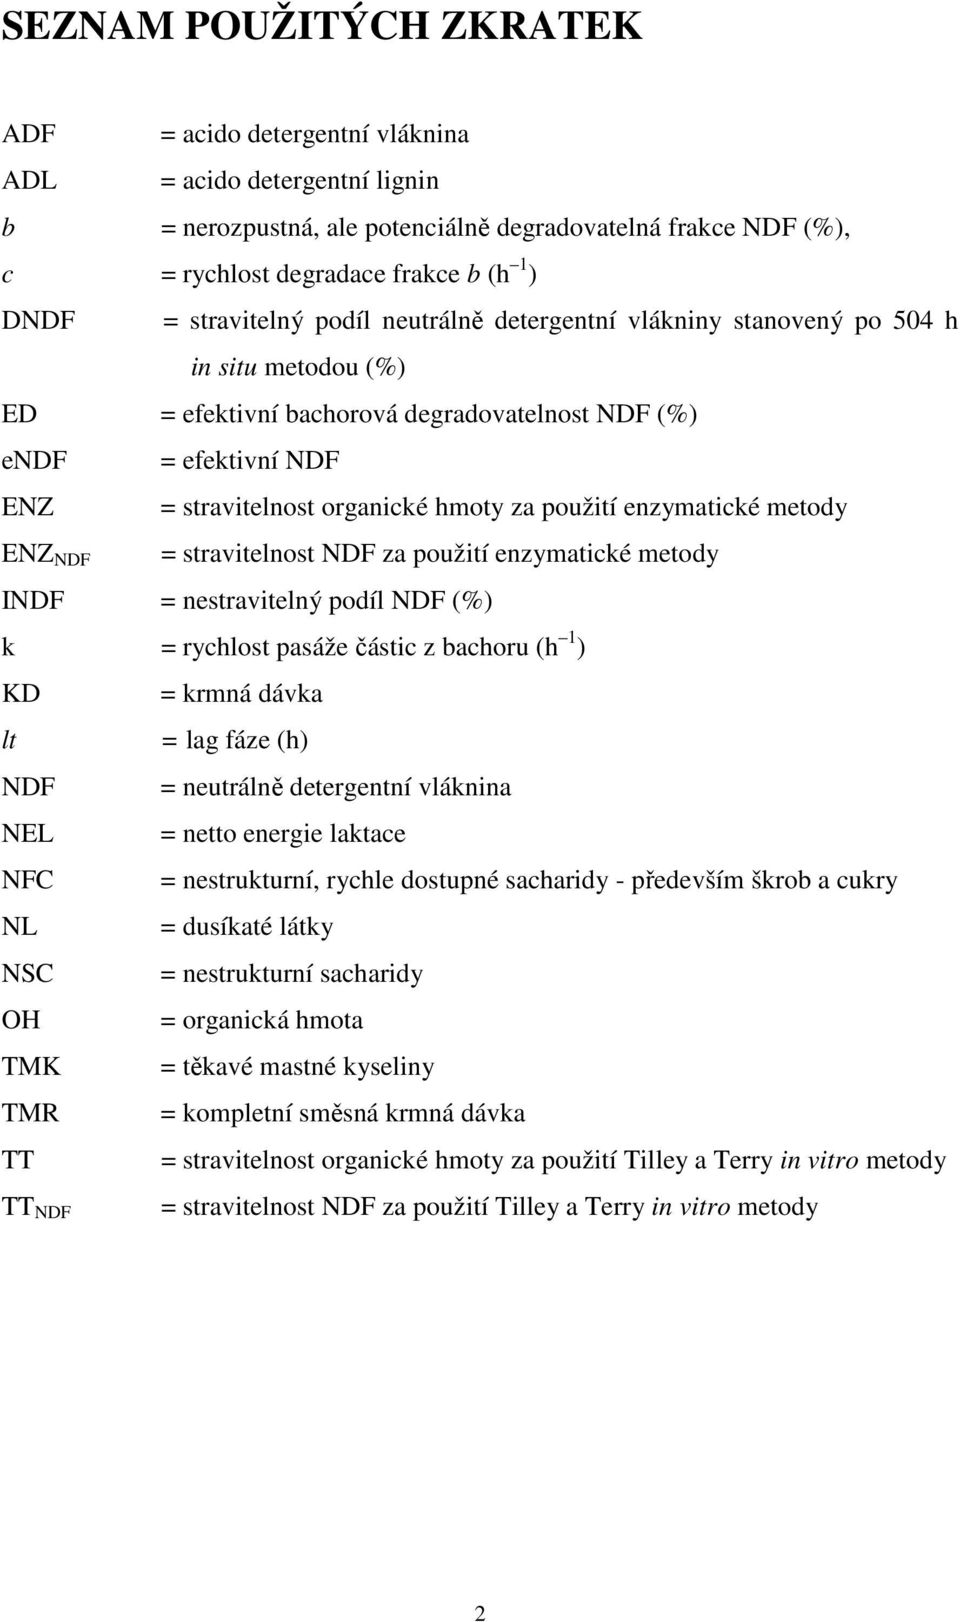 použití enzymatické metody ENZ NDF = stravitelnost NDF za použití enzymatické metody INDF = nestravitelný podíl NDF (%) k = rychlost pasáže částic z bachoru (h 1 ) KD = krmná dávka lt = lag fáze (h)